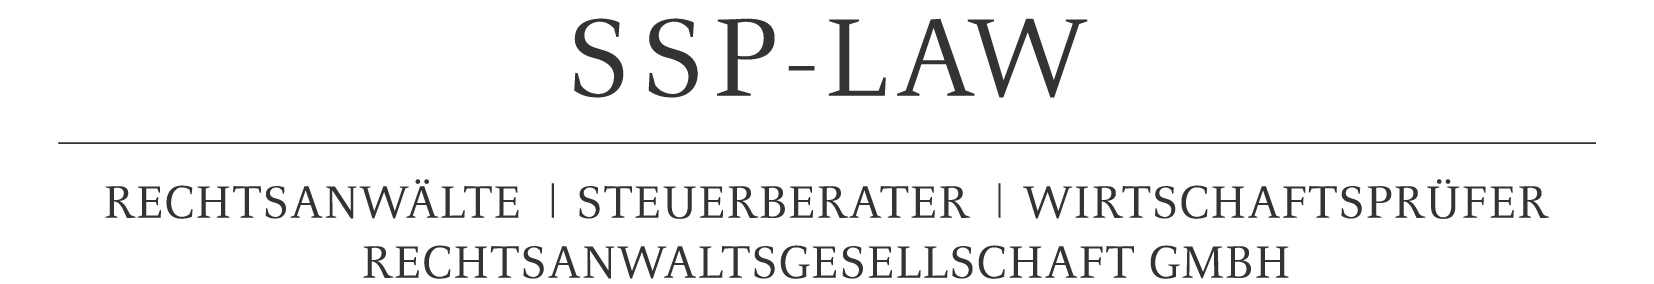 SSP-LAW Rechtsanwaltsgesellschaft